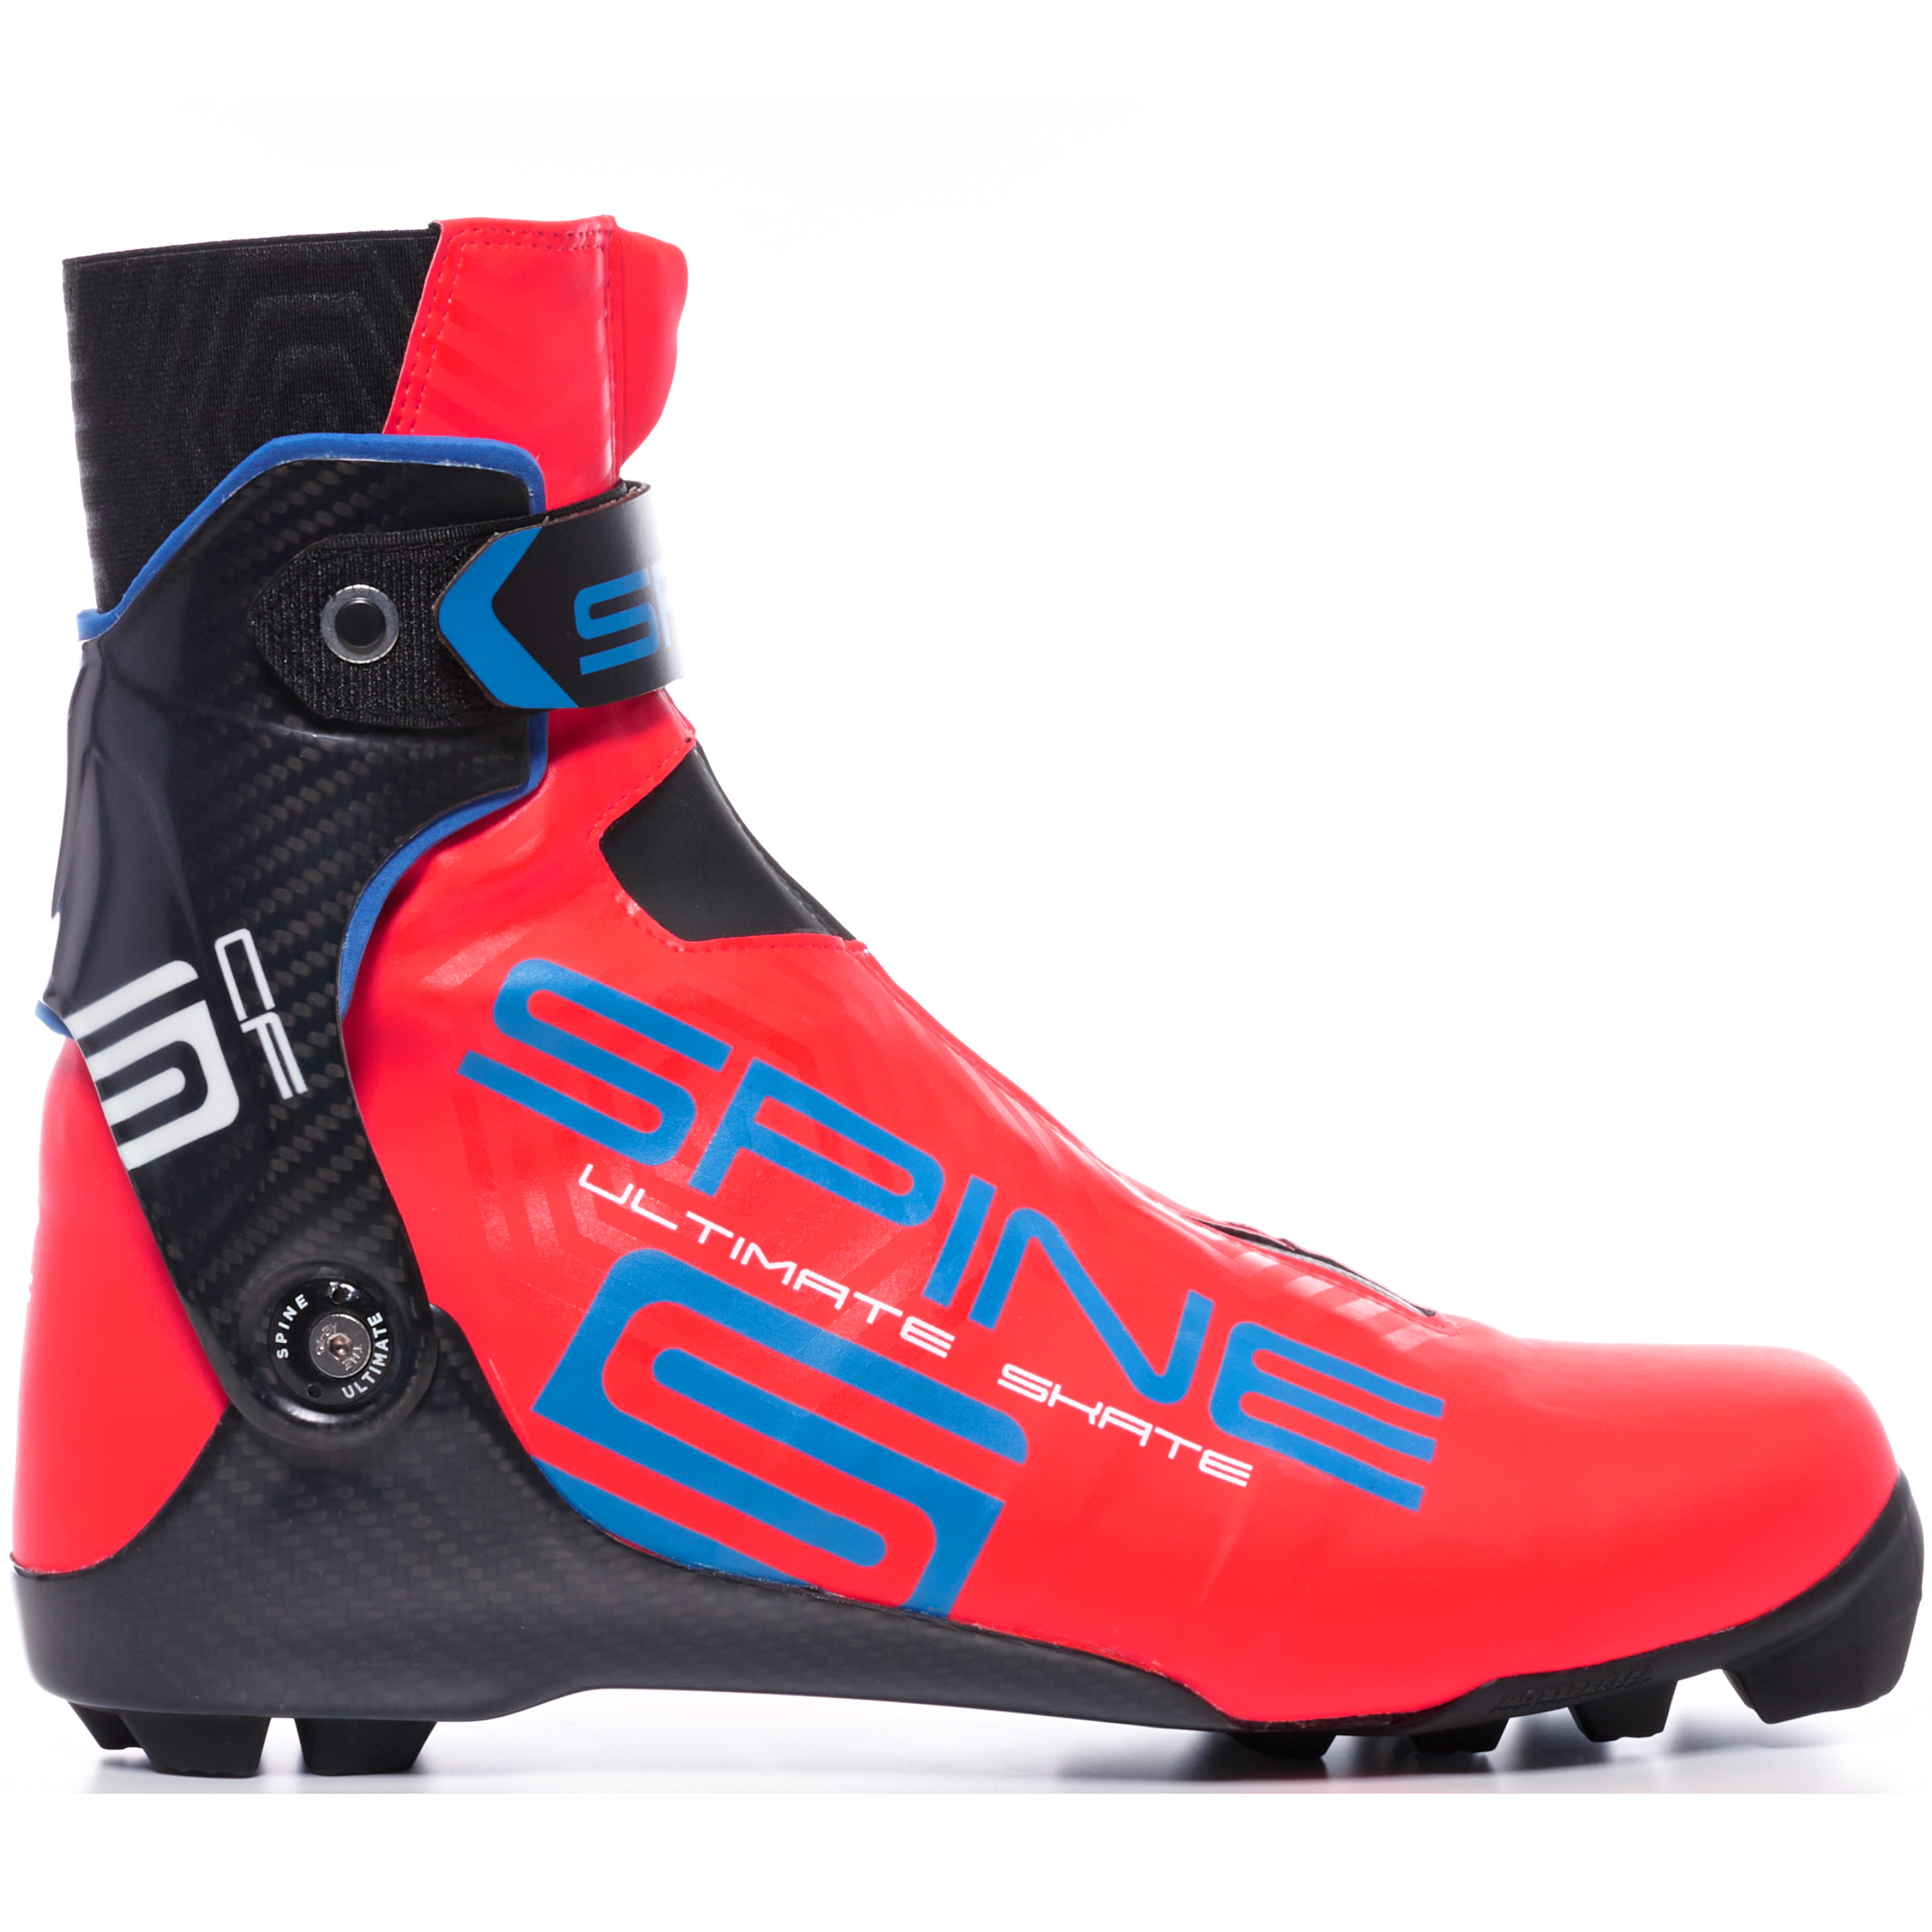 Купить «Лыжные ботинки SPINE NNN Ultimate Skate (599 SCF (Or/Bl))(оранжевый/синий)» в экипировочном центре СПАЙН-СПОРТ